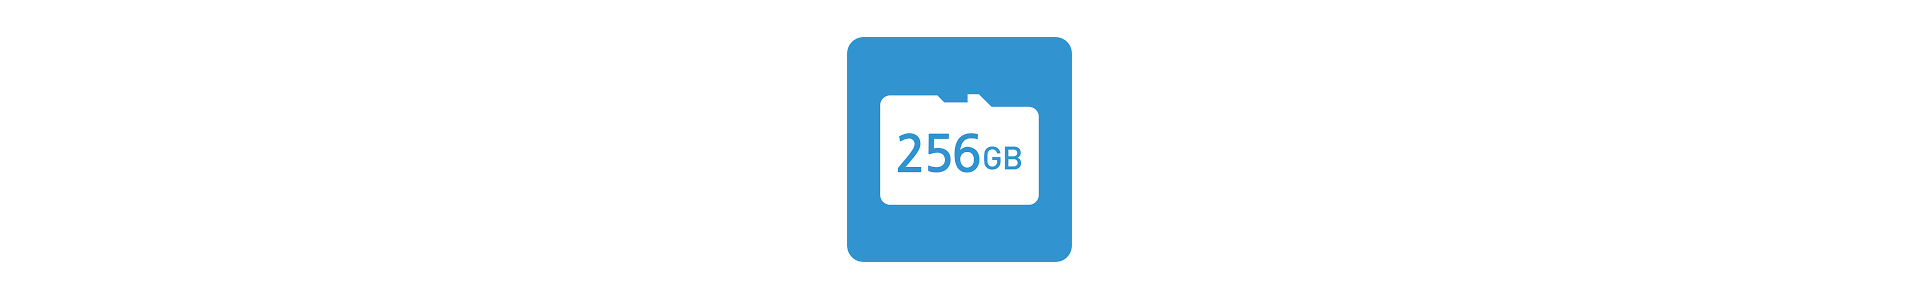 SD Card 256GB